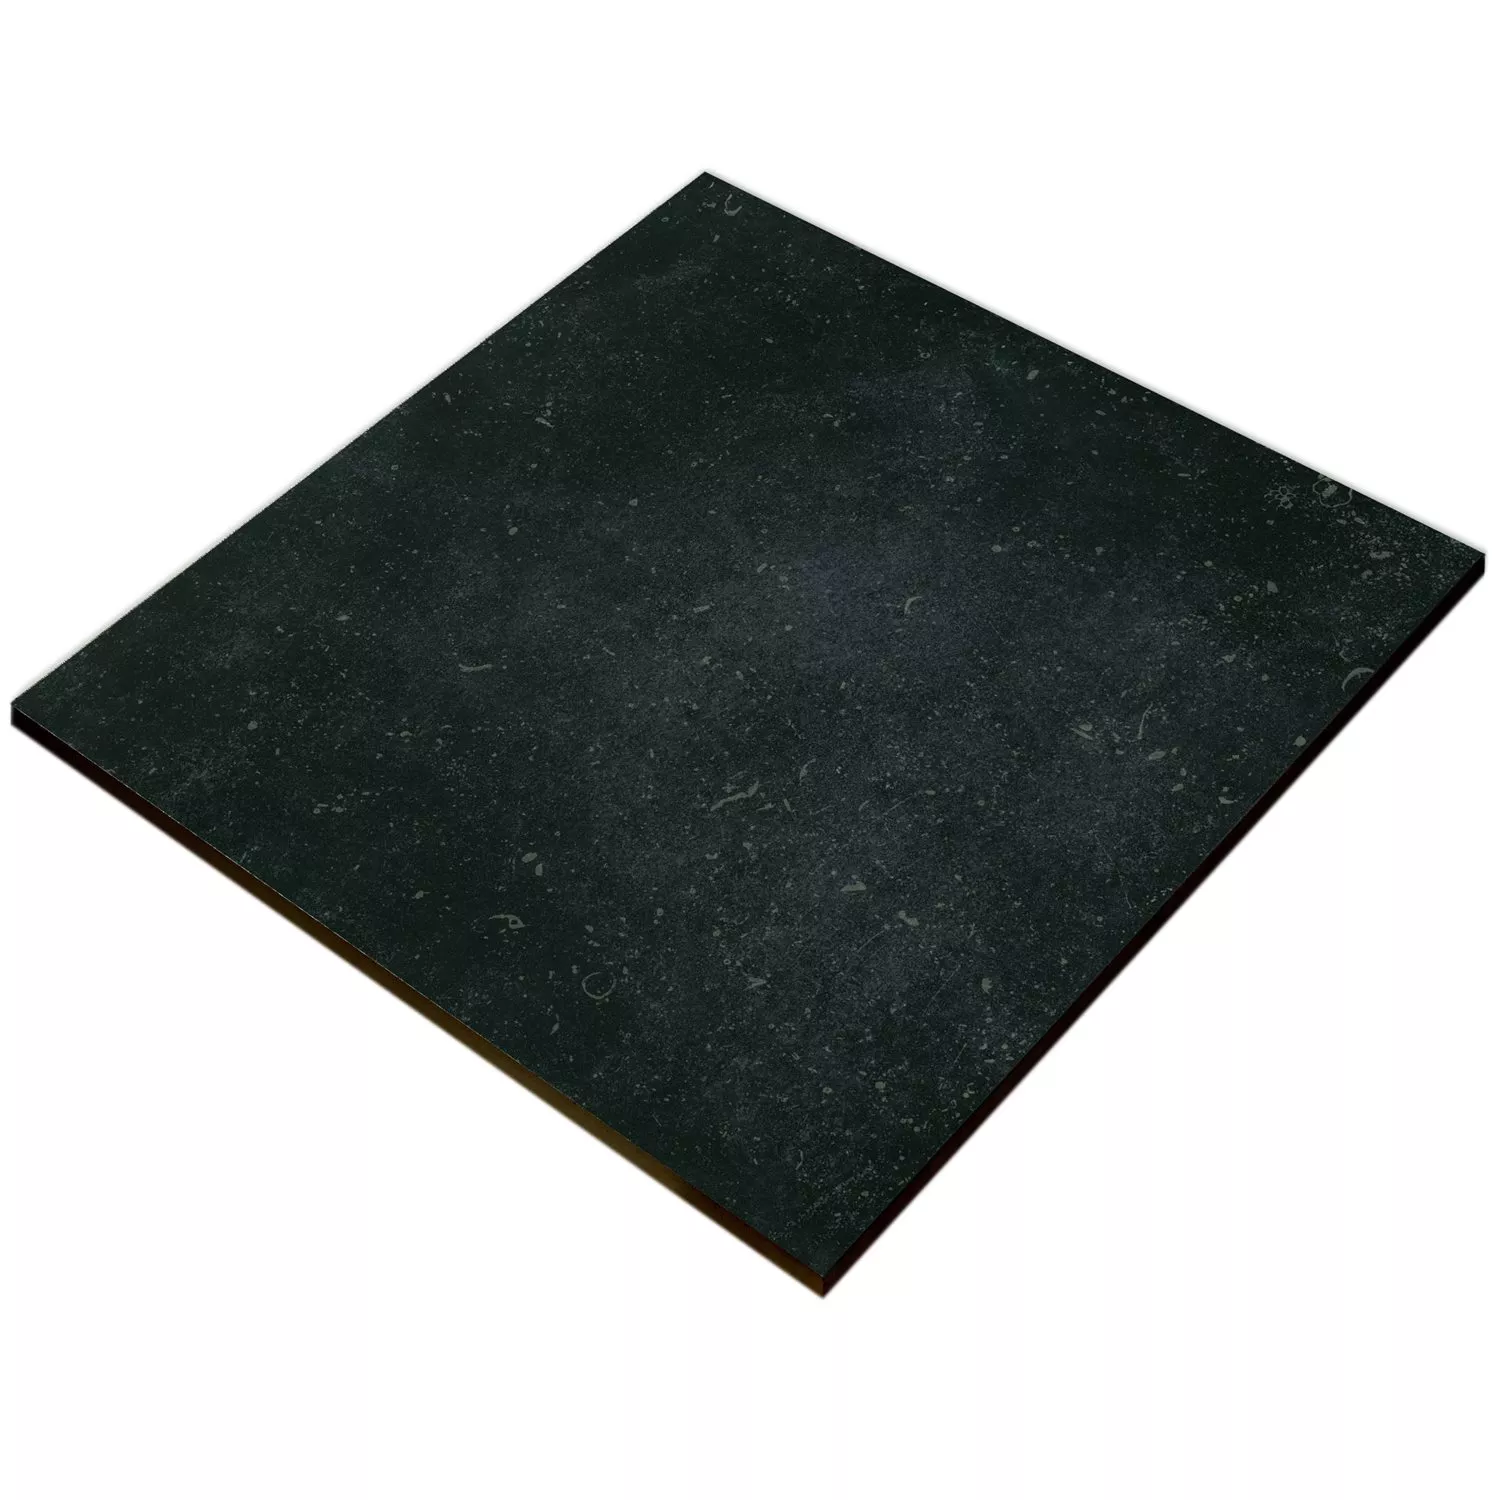 Sample Floor Tiles Wilhelm Bluestone Limestone Optic Black